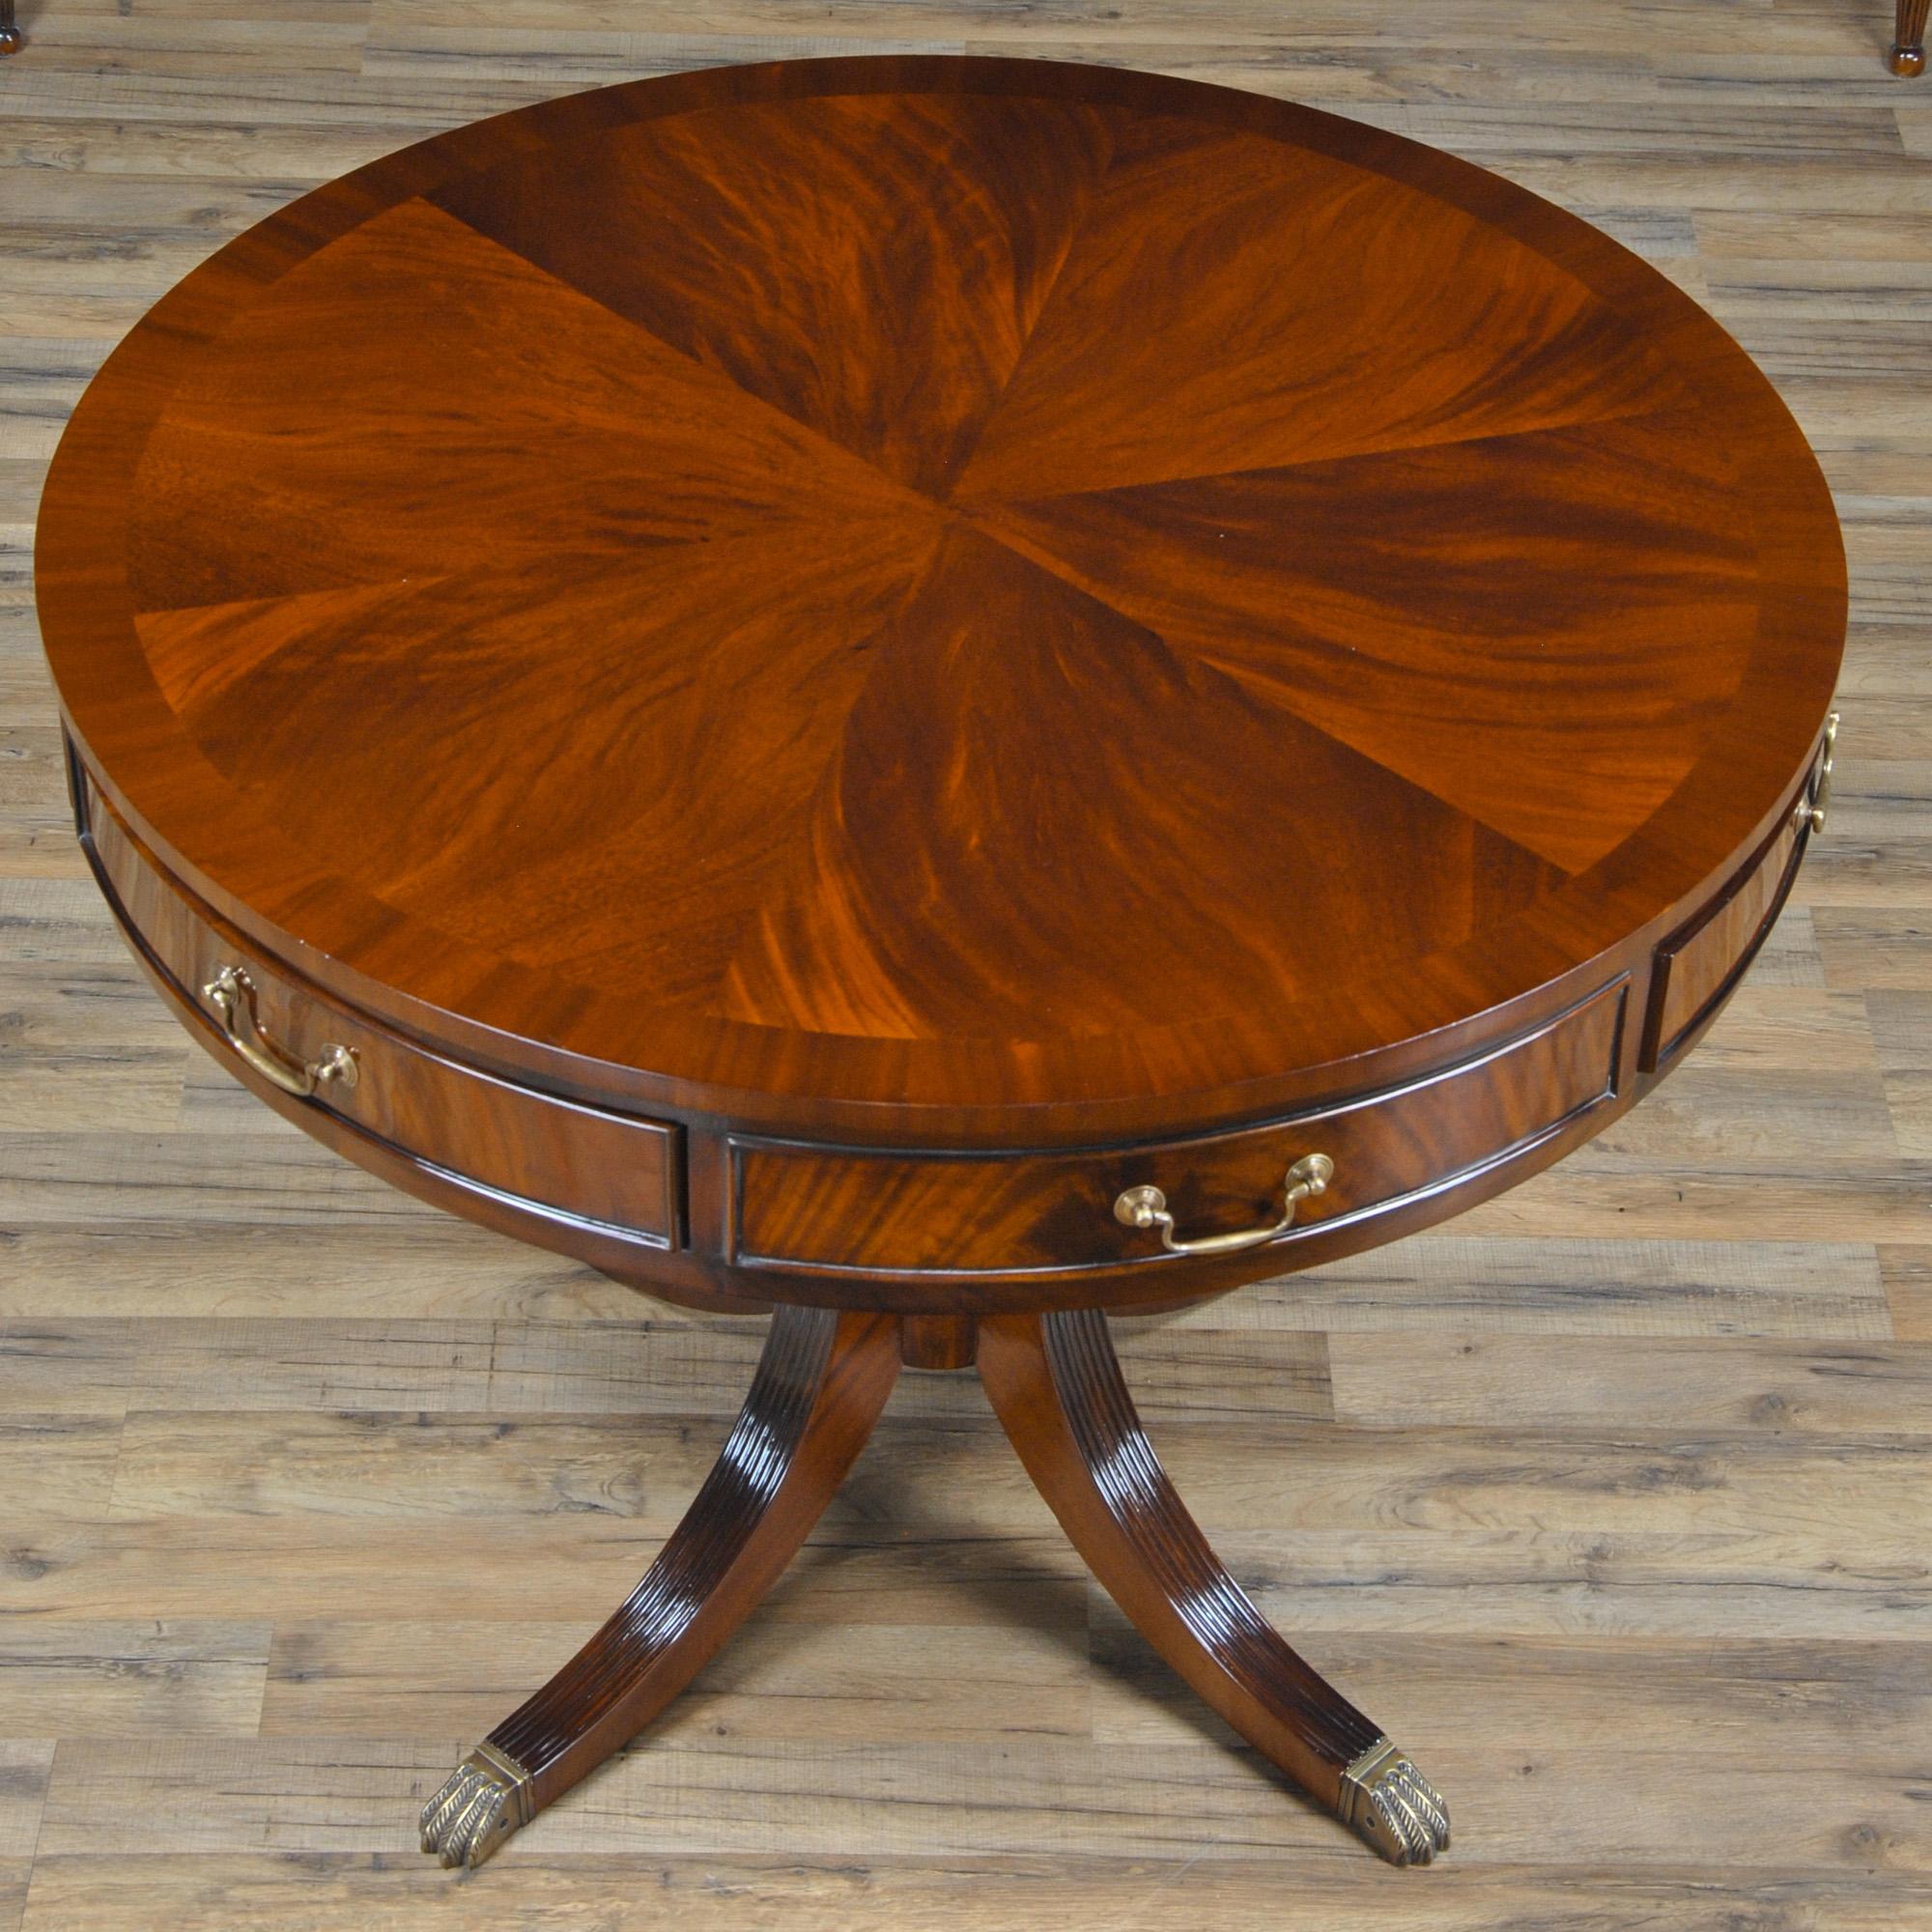 Cette grande table à tambour de Niagara Furniture a été inspirée par les grandes tables à loyer utilisées en Angleterre au XVIIIe siècle pour aider à organiser les grandes propriétés. Cette forme de table à grand tambour s'est bien adaptée à la vie